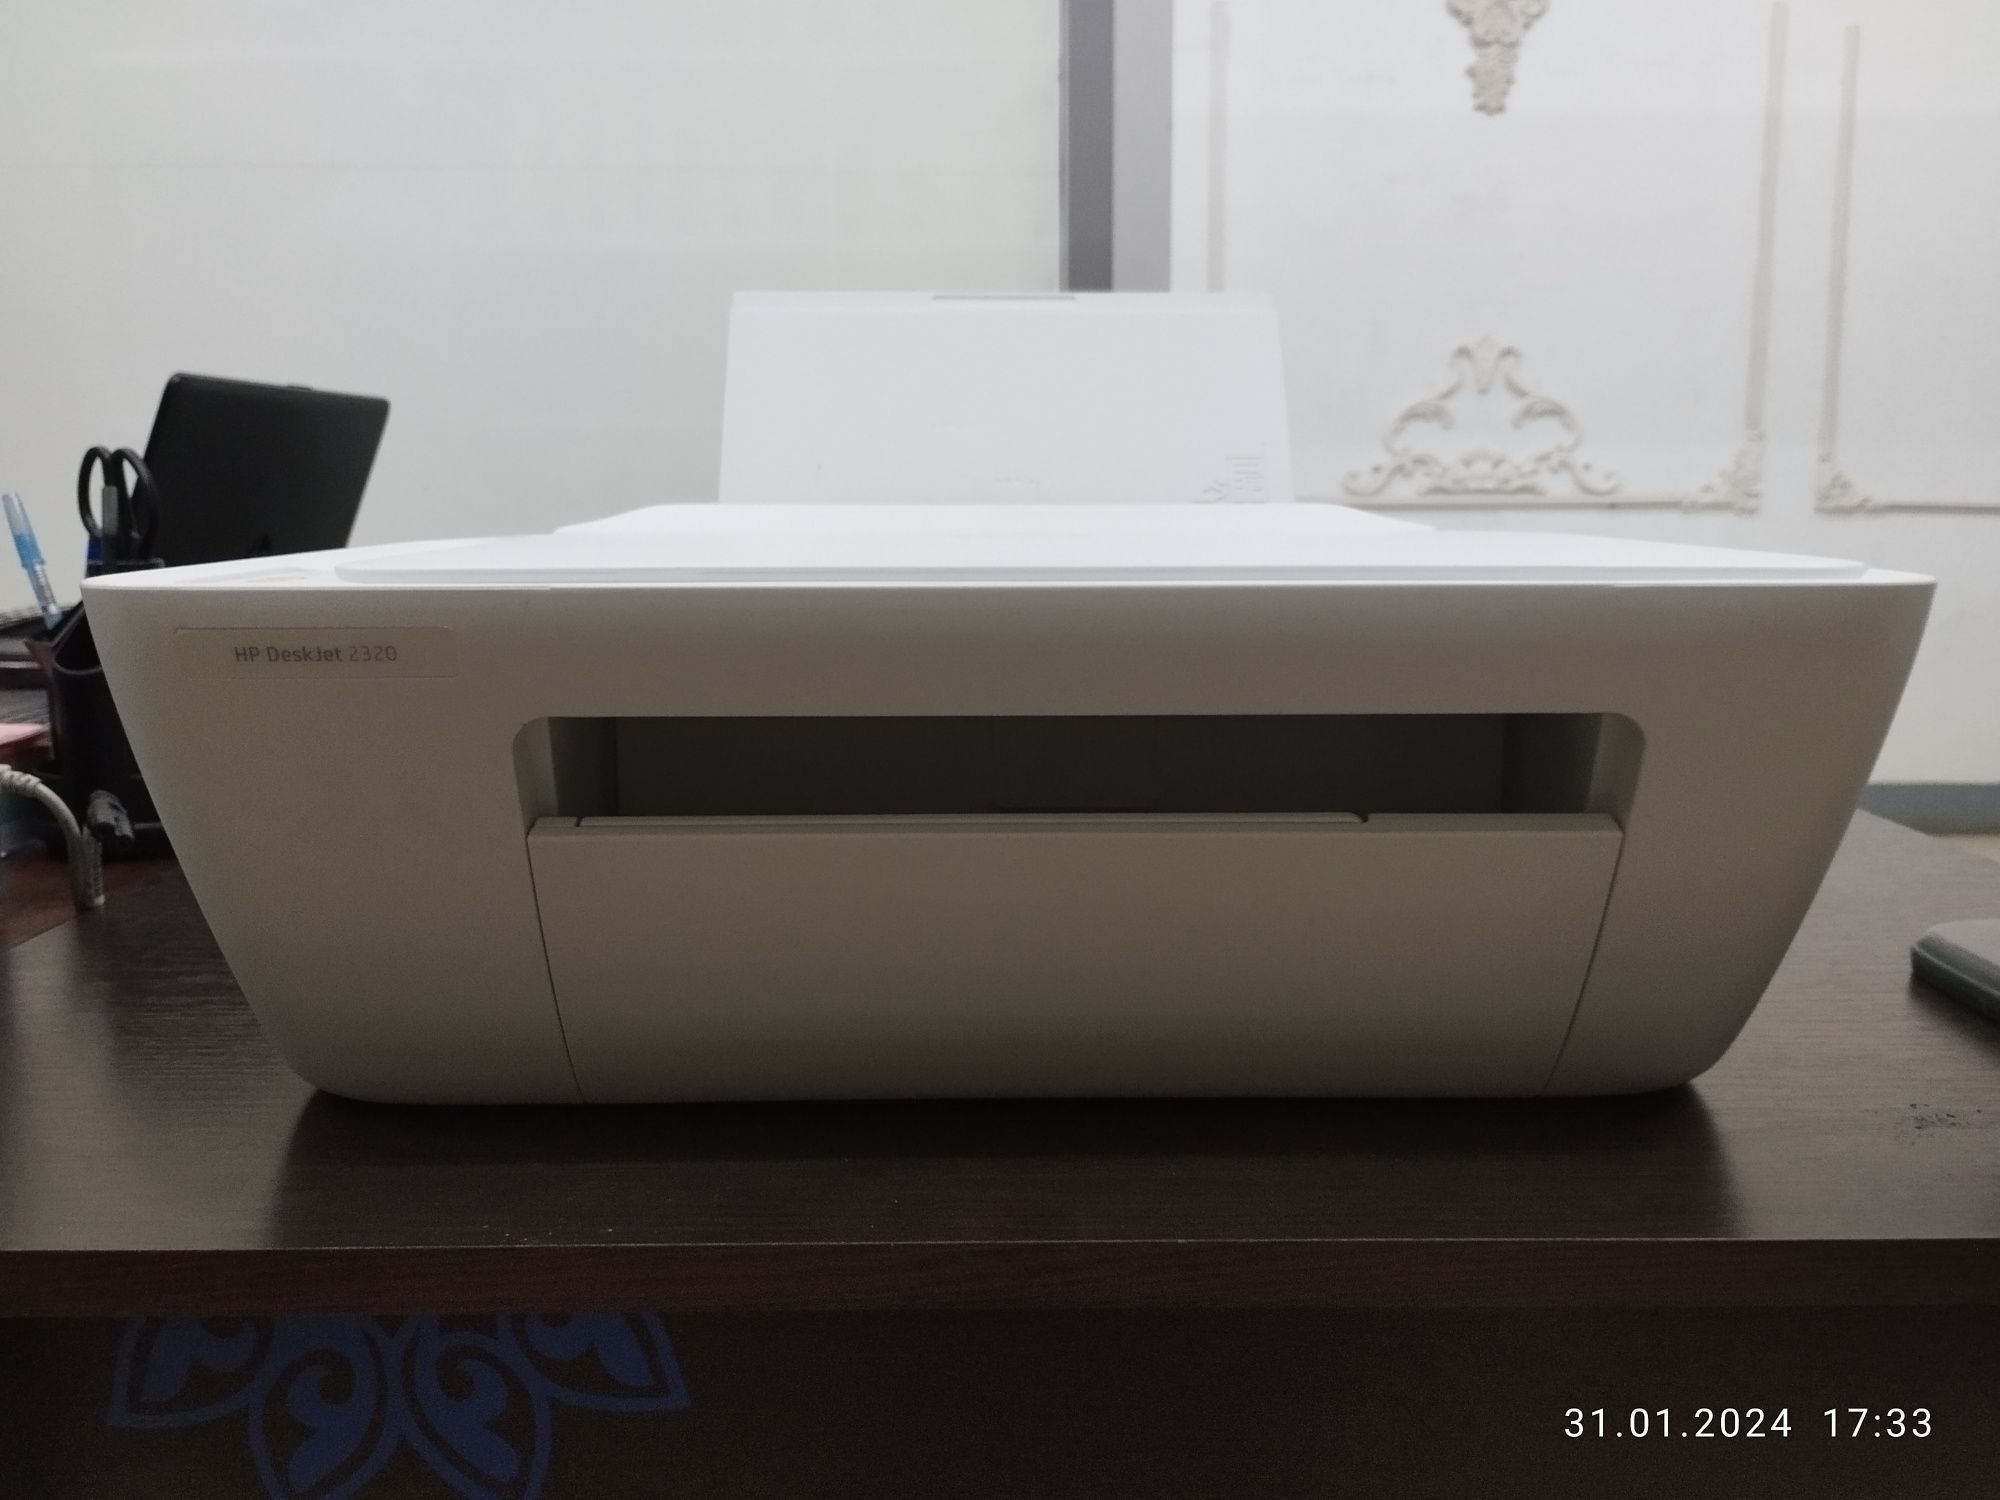 Принтер HP DeskJet 2320(без картриджей)